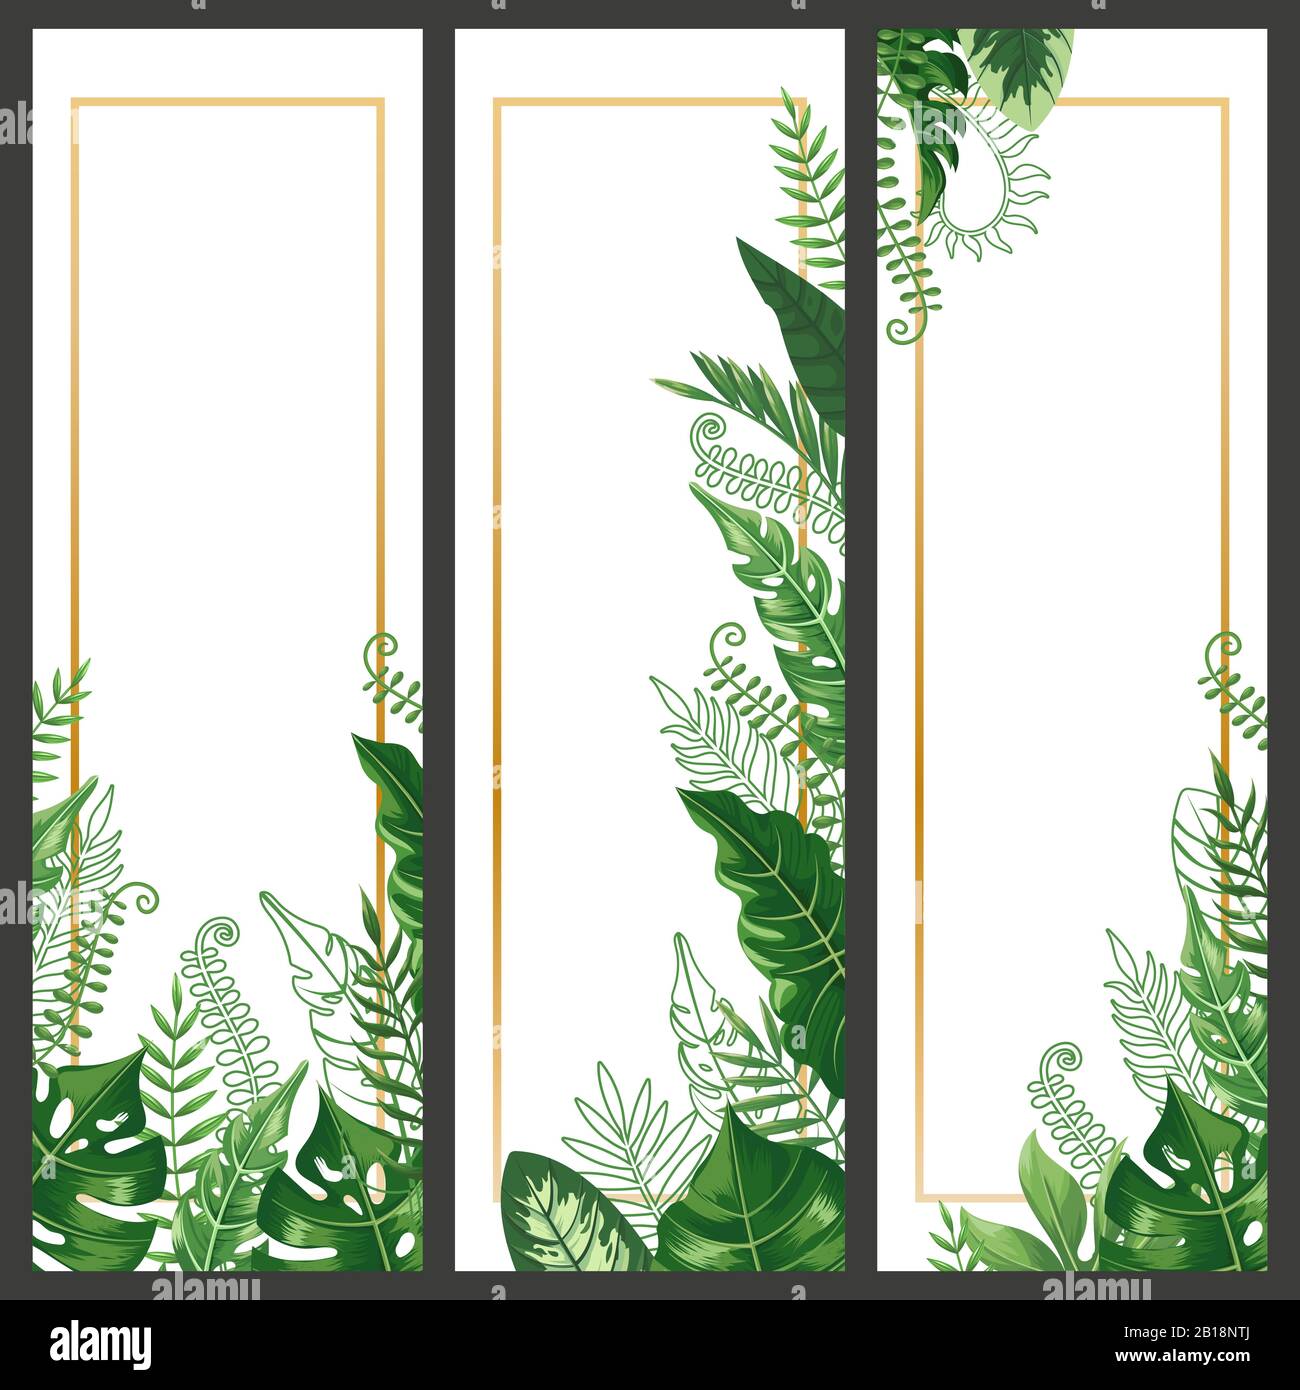 Banner mit exotischen Blättern. Tropisches Monstera-Blatt, Palmenzweig und alte pflanzen der natur in hawaii vertikale Banner Vektor-Hintergrund-Set Stock Vektor